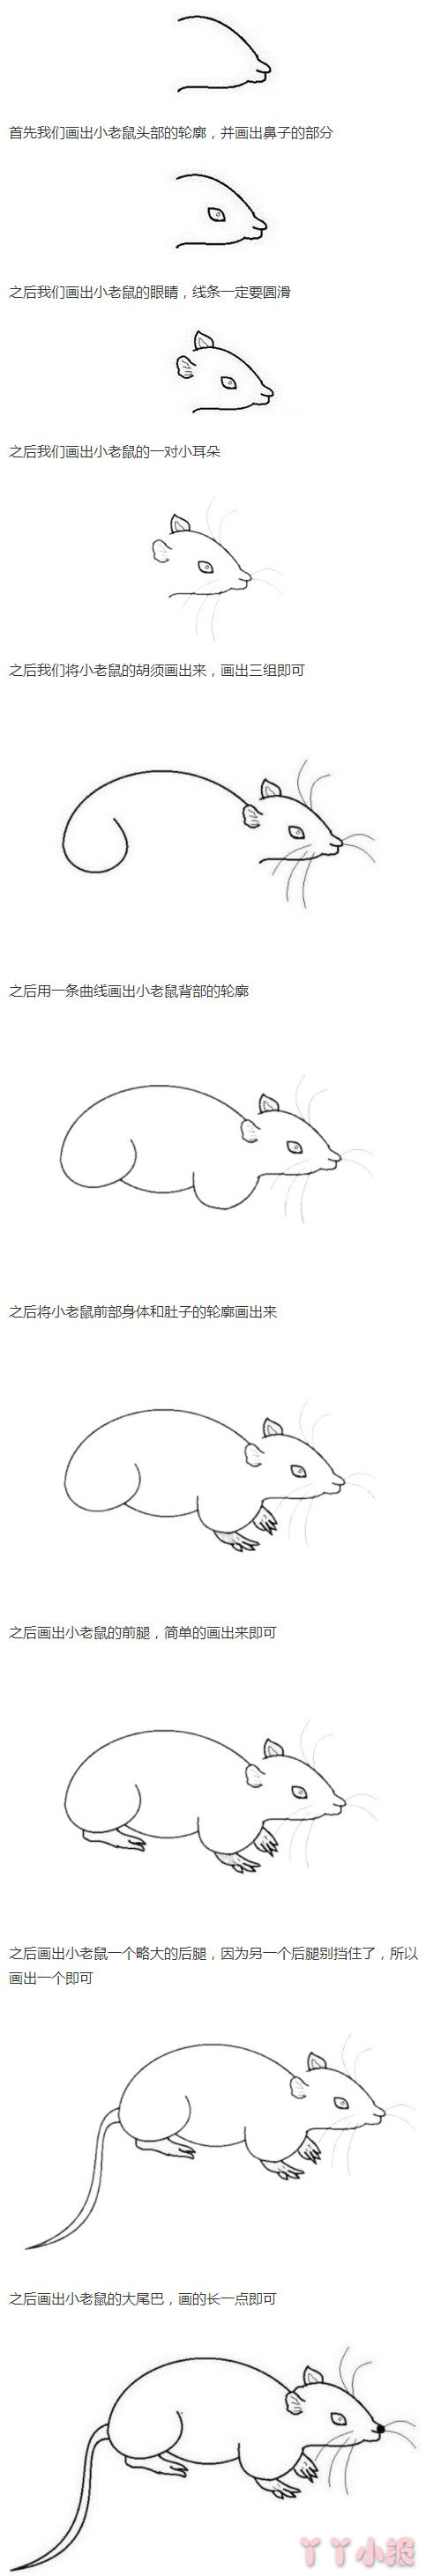 小老鼠的画法步骤图简单又好看